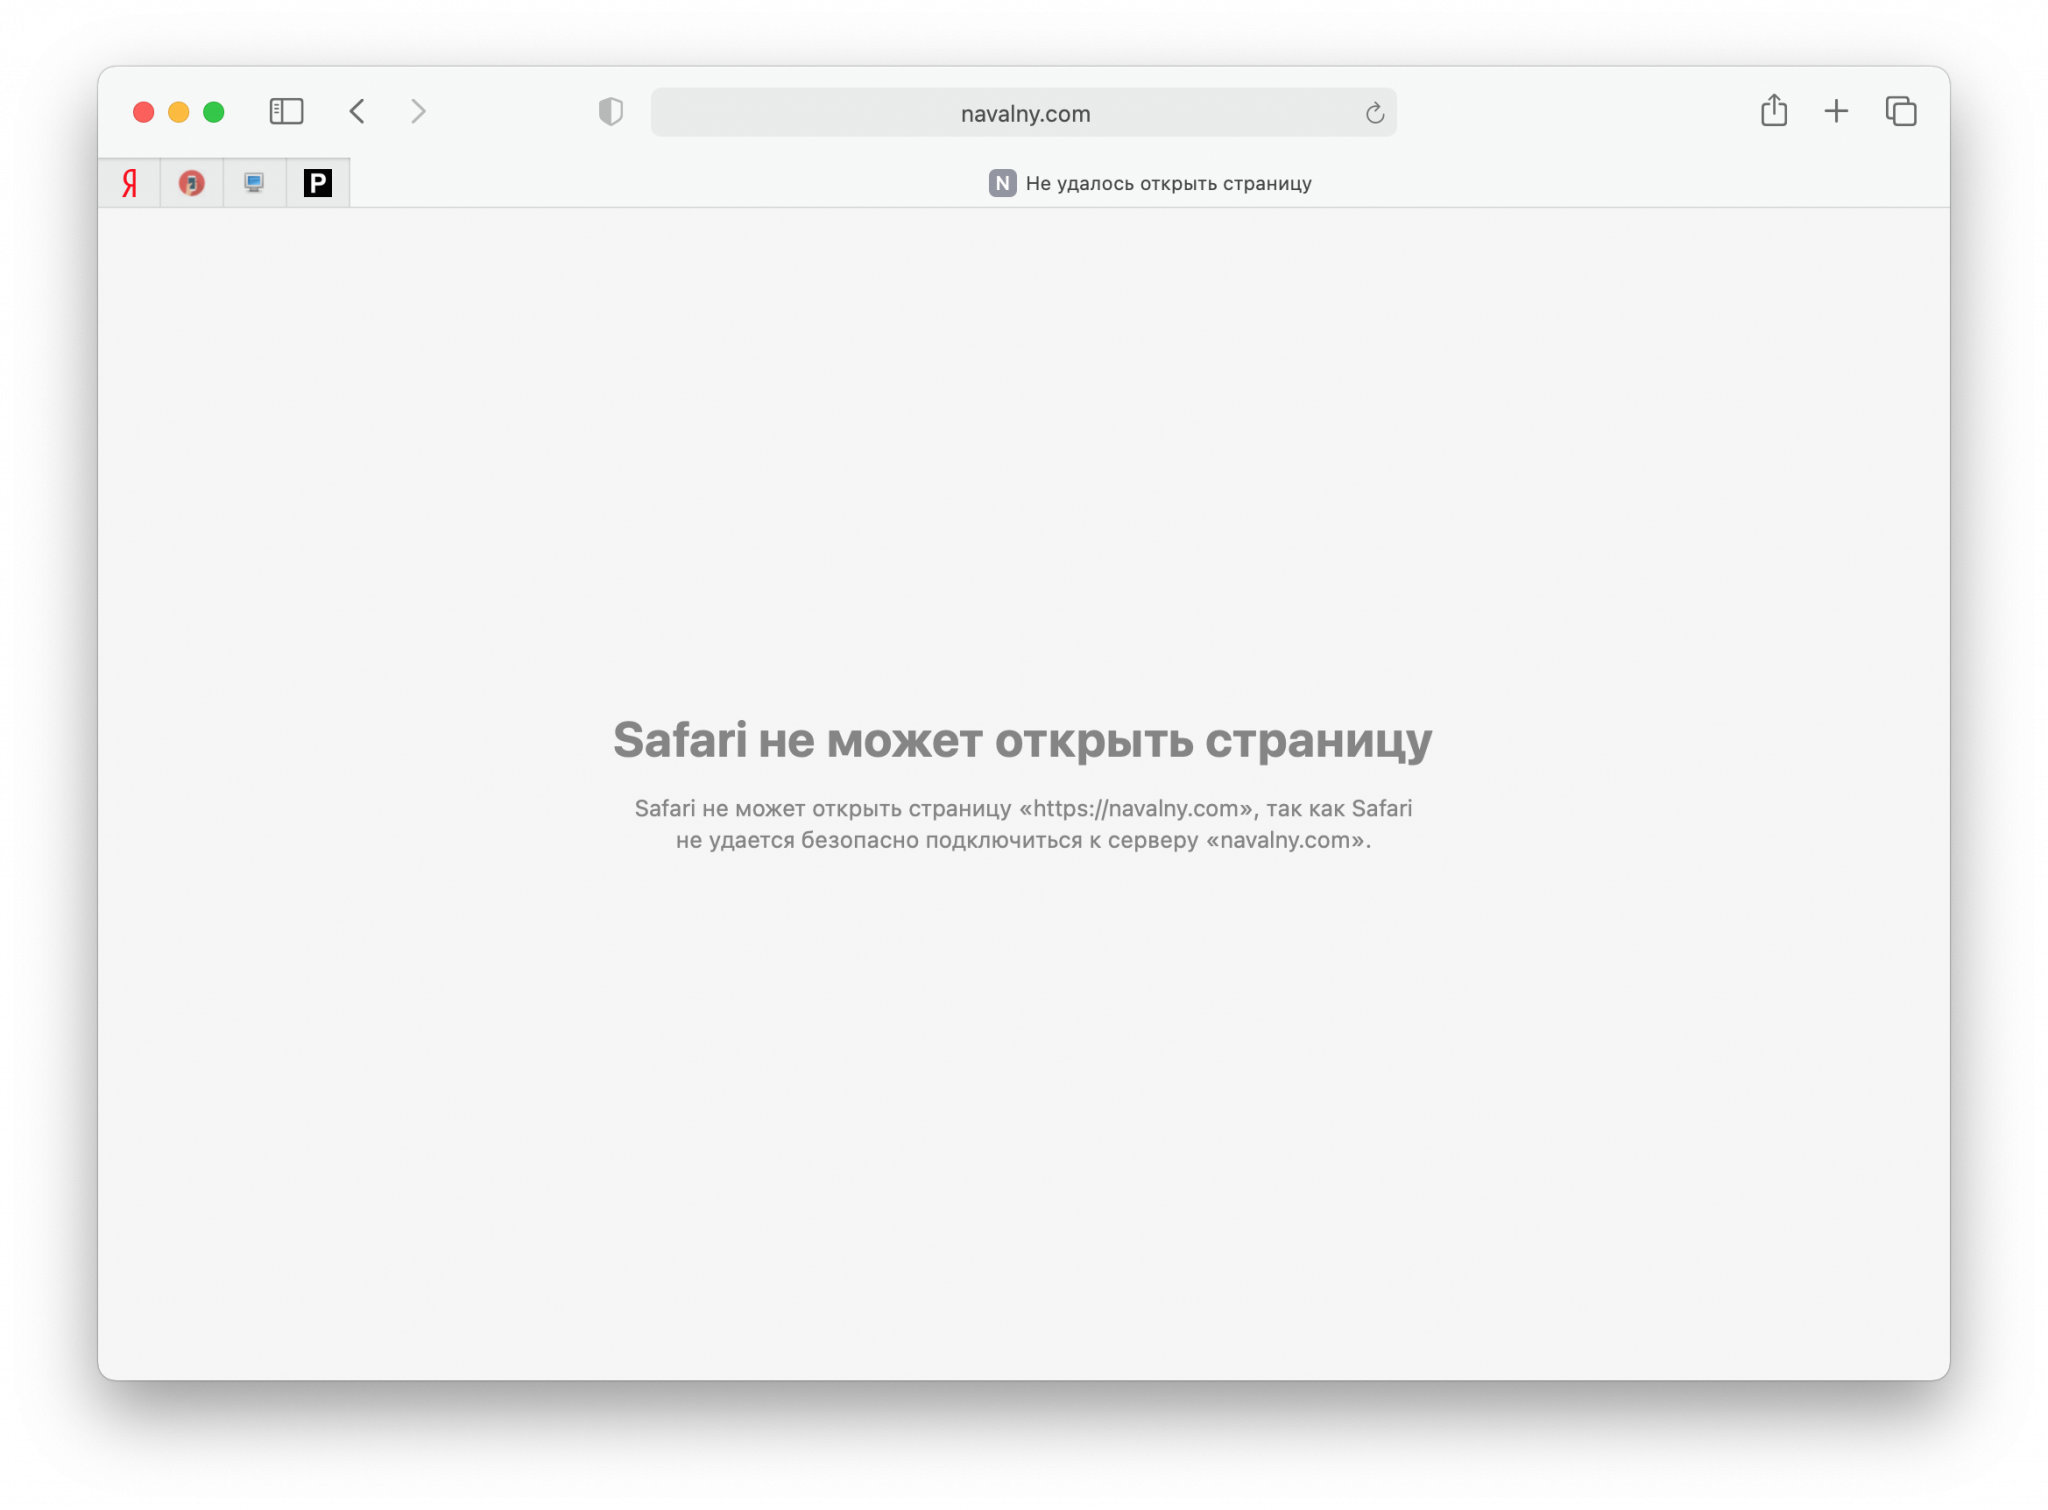 Блокировка телеграмм в россии. Behance заблокирован в России. Заблокированные 49.